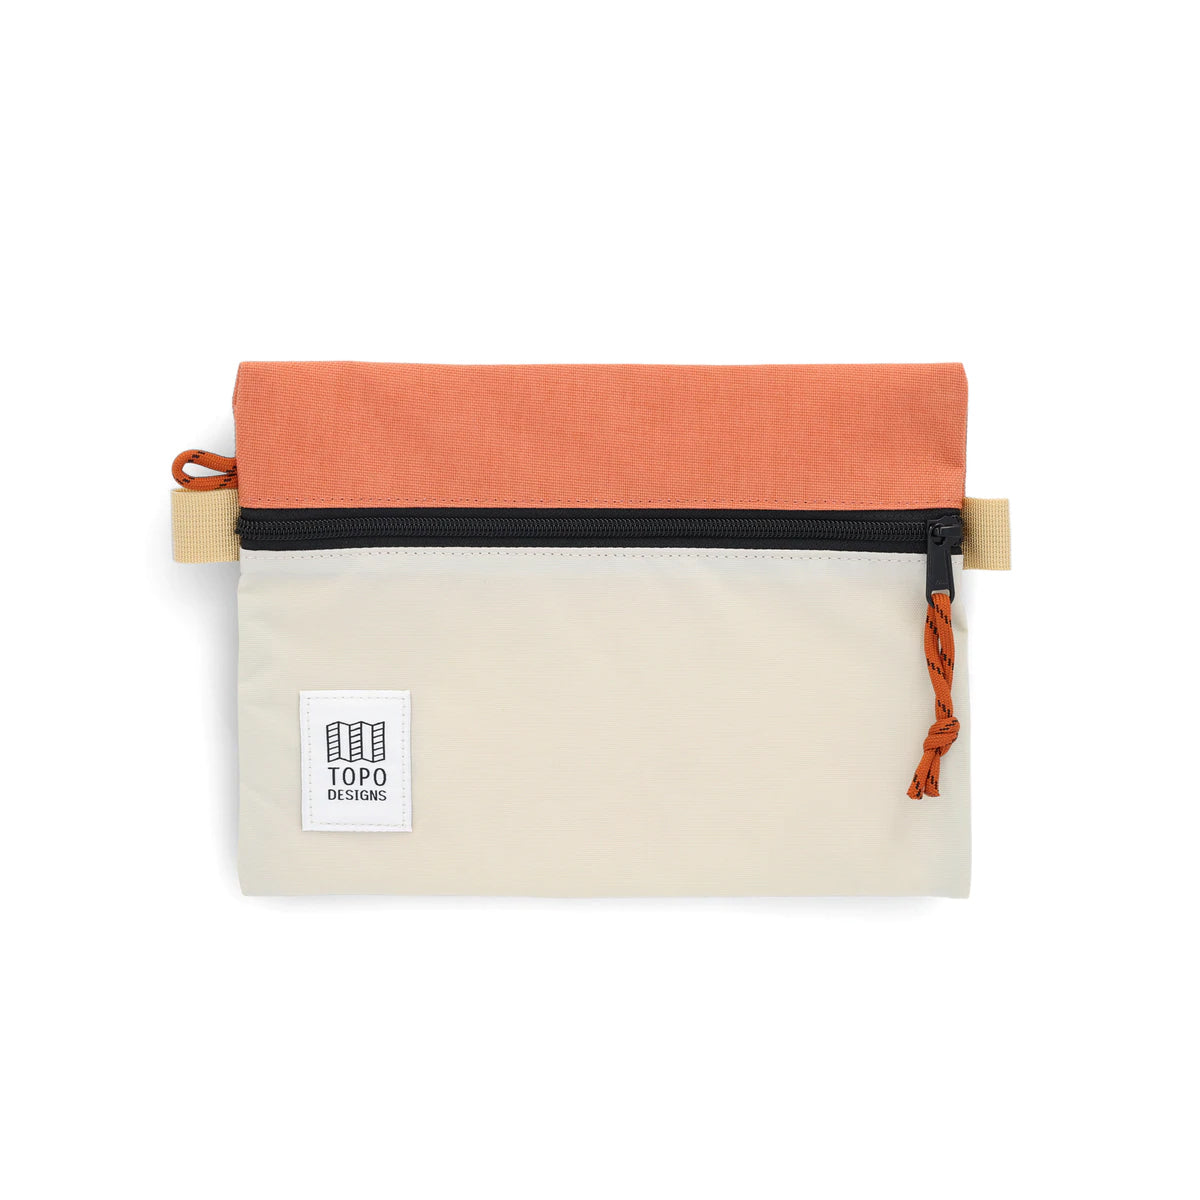 Topo Designs : Accessory Bag : Bone White/Coral